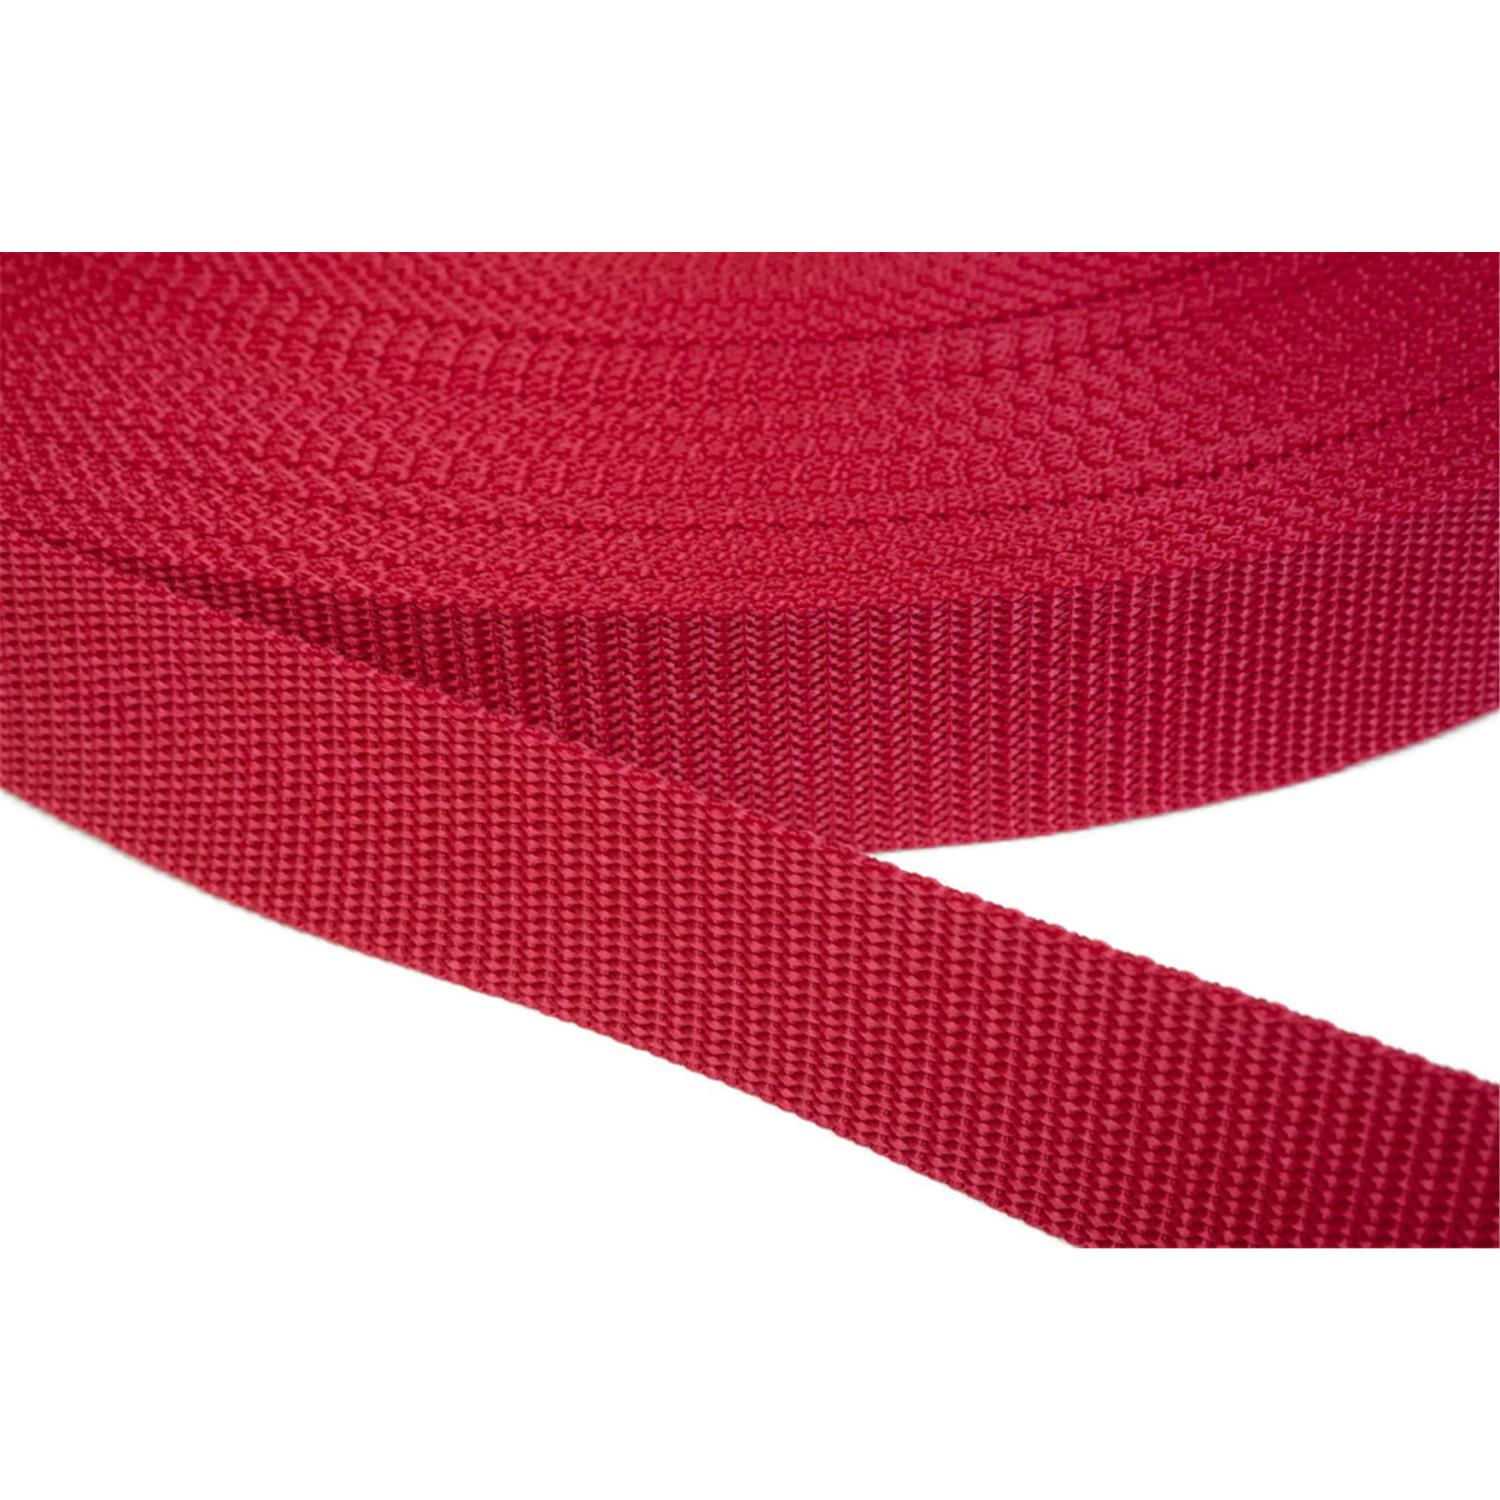 Gurtband 20mm breit aus Polypropylen in 41 Farben 19 - rot 12 Meter